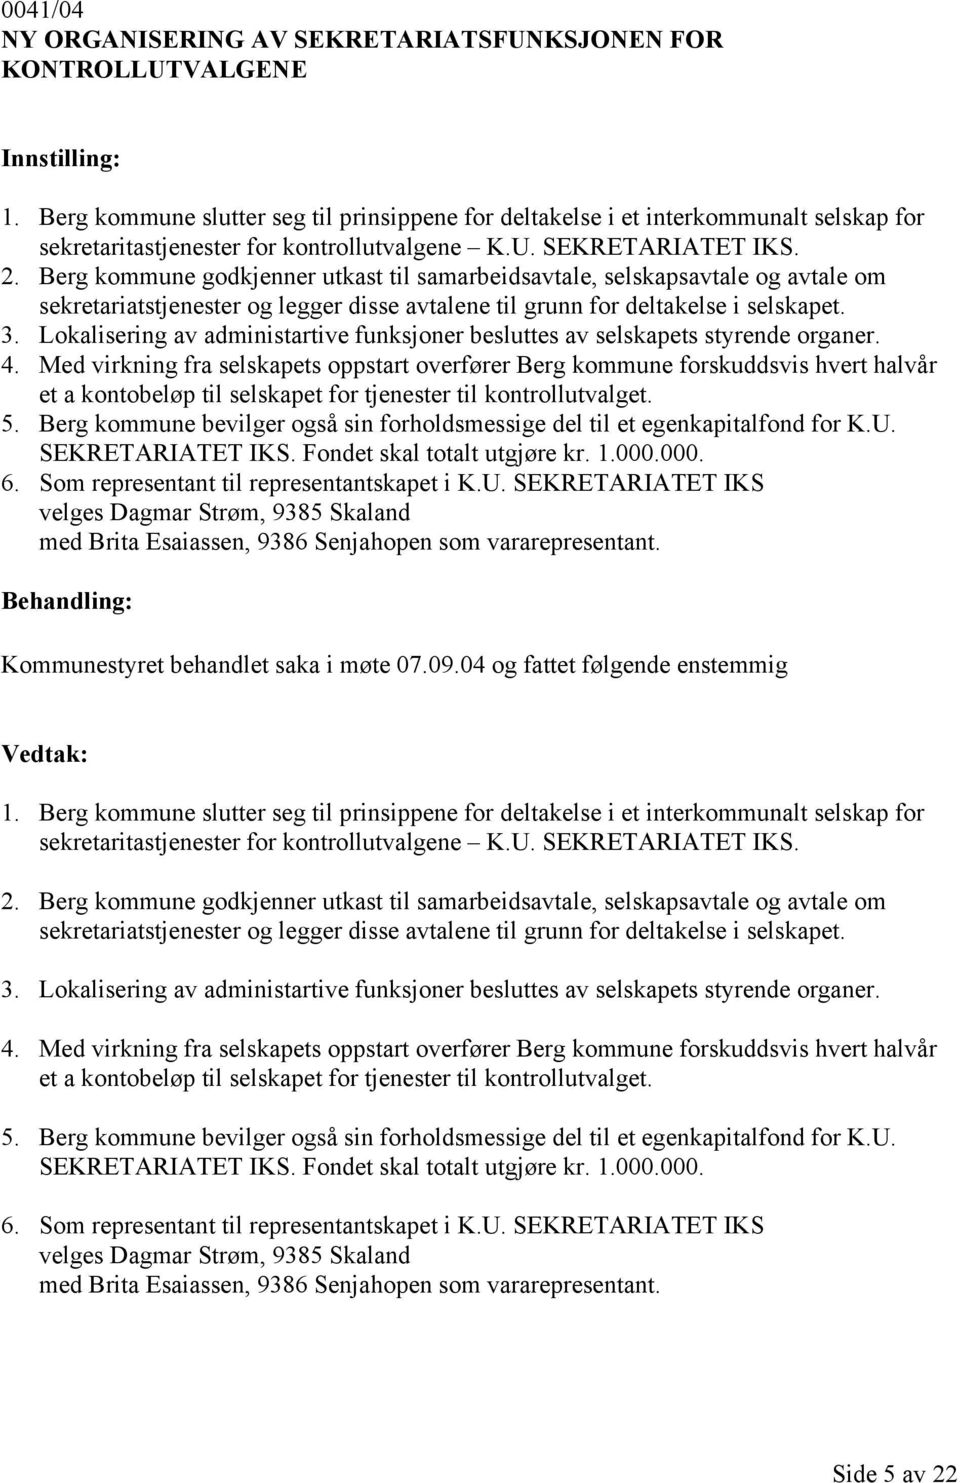 Berg kommune godkjenner utkast til samarbeidsavtale, selskapsavtale og avtale om sekretariatstjenester og legger disse avtalene til grunn for deltakelse i selskapet. 3.